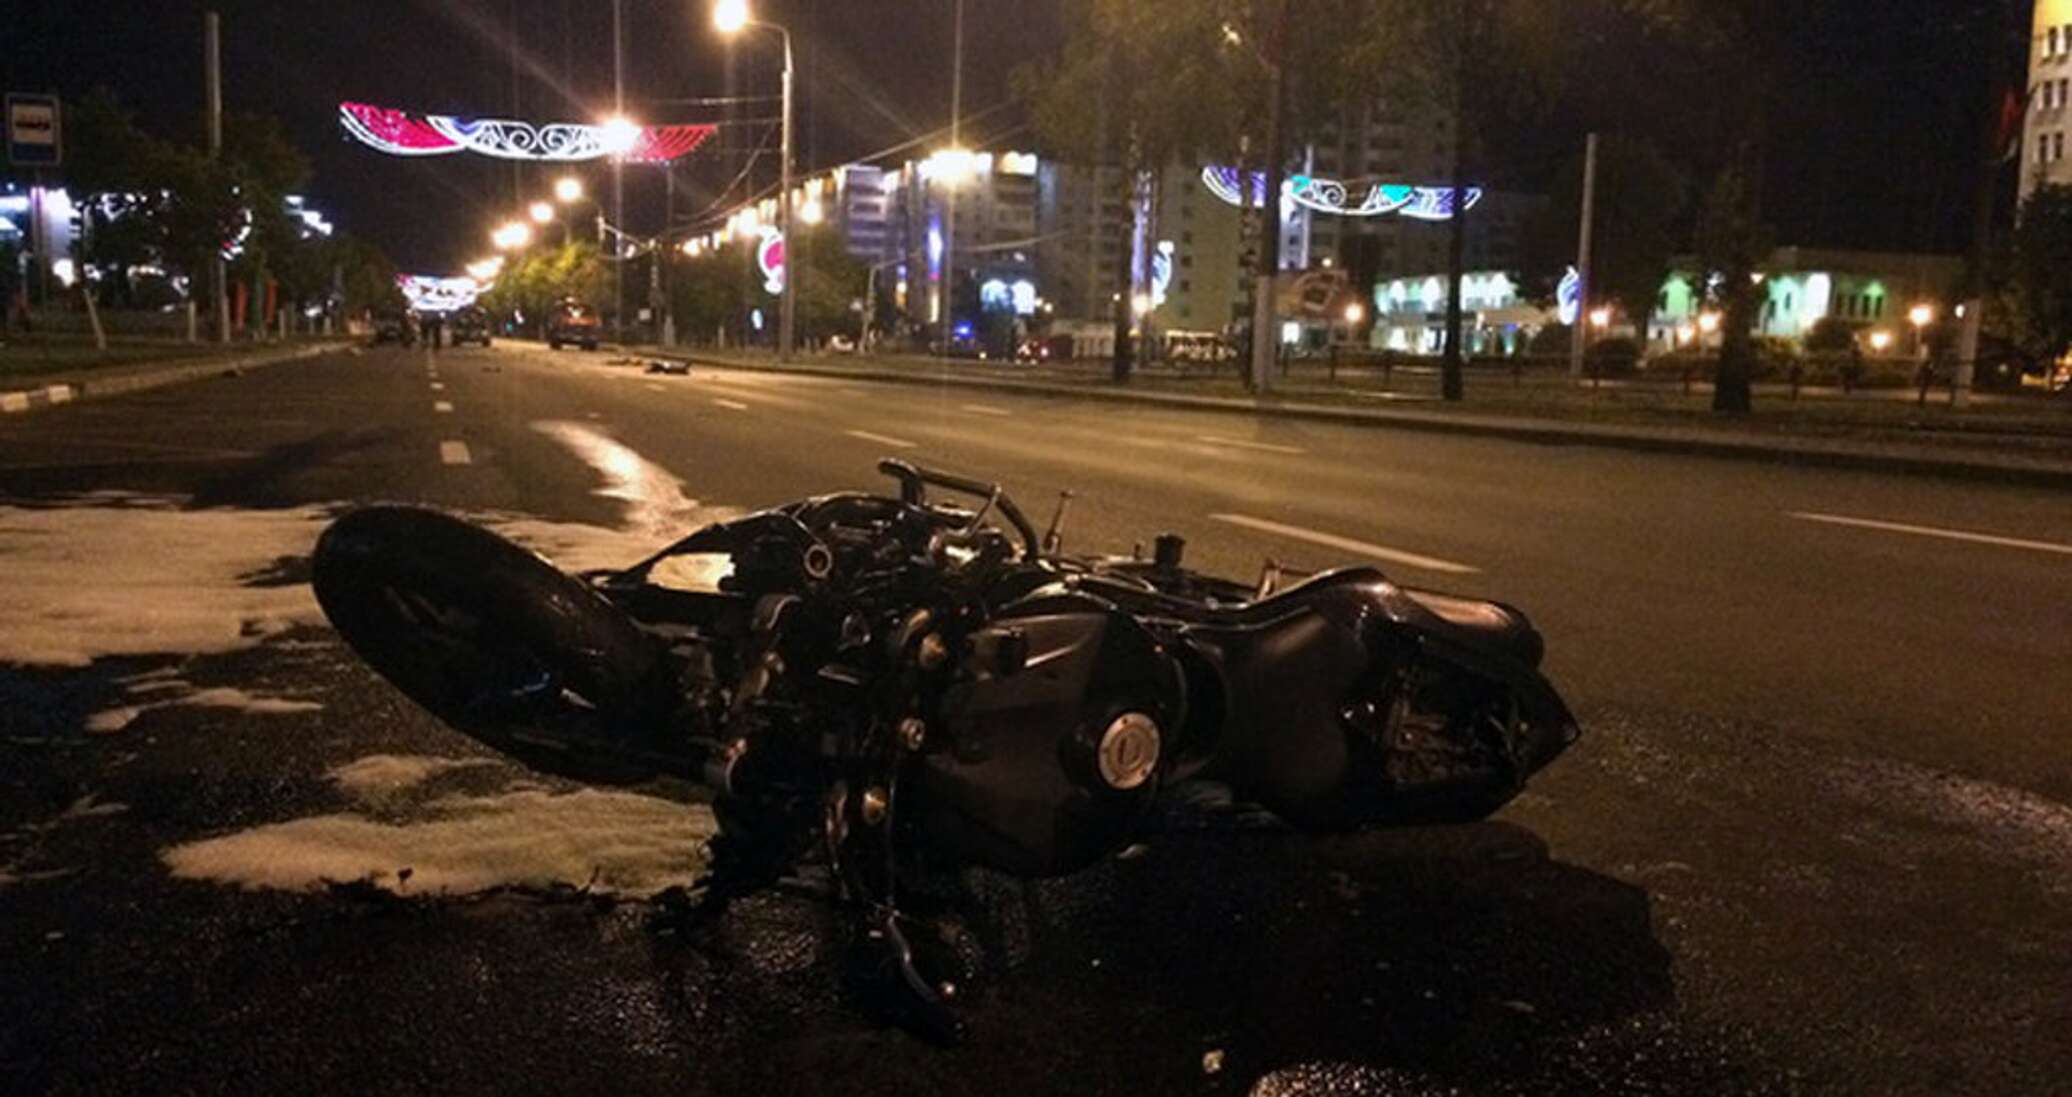 Мотоцикл авария в городе ночью